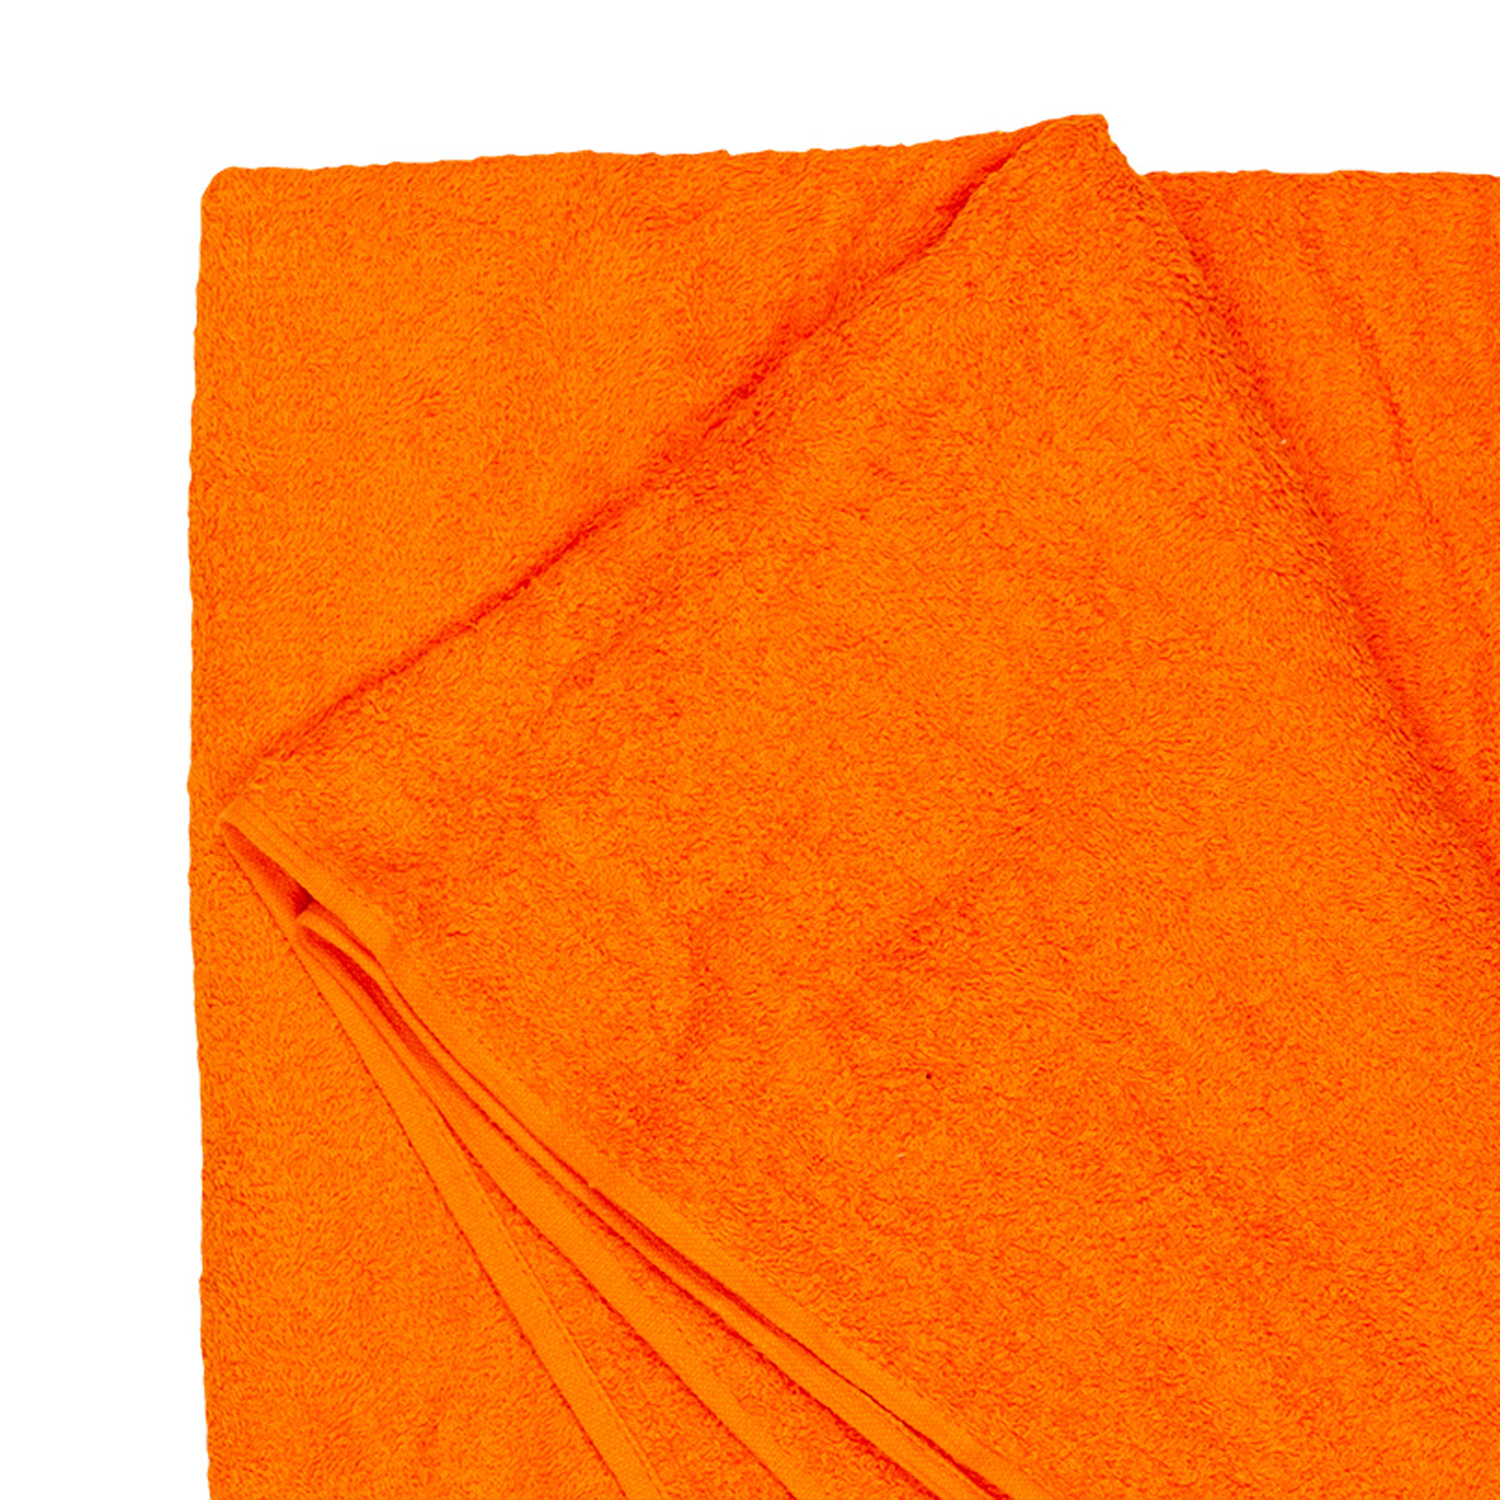 Bath towel series Helsinki in orange by Adamo in large sizes 100x220 cm or 155x220 cm